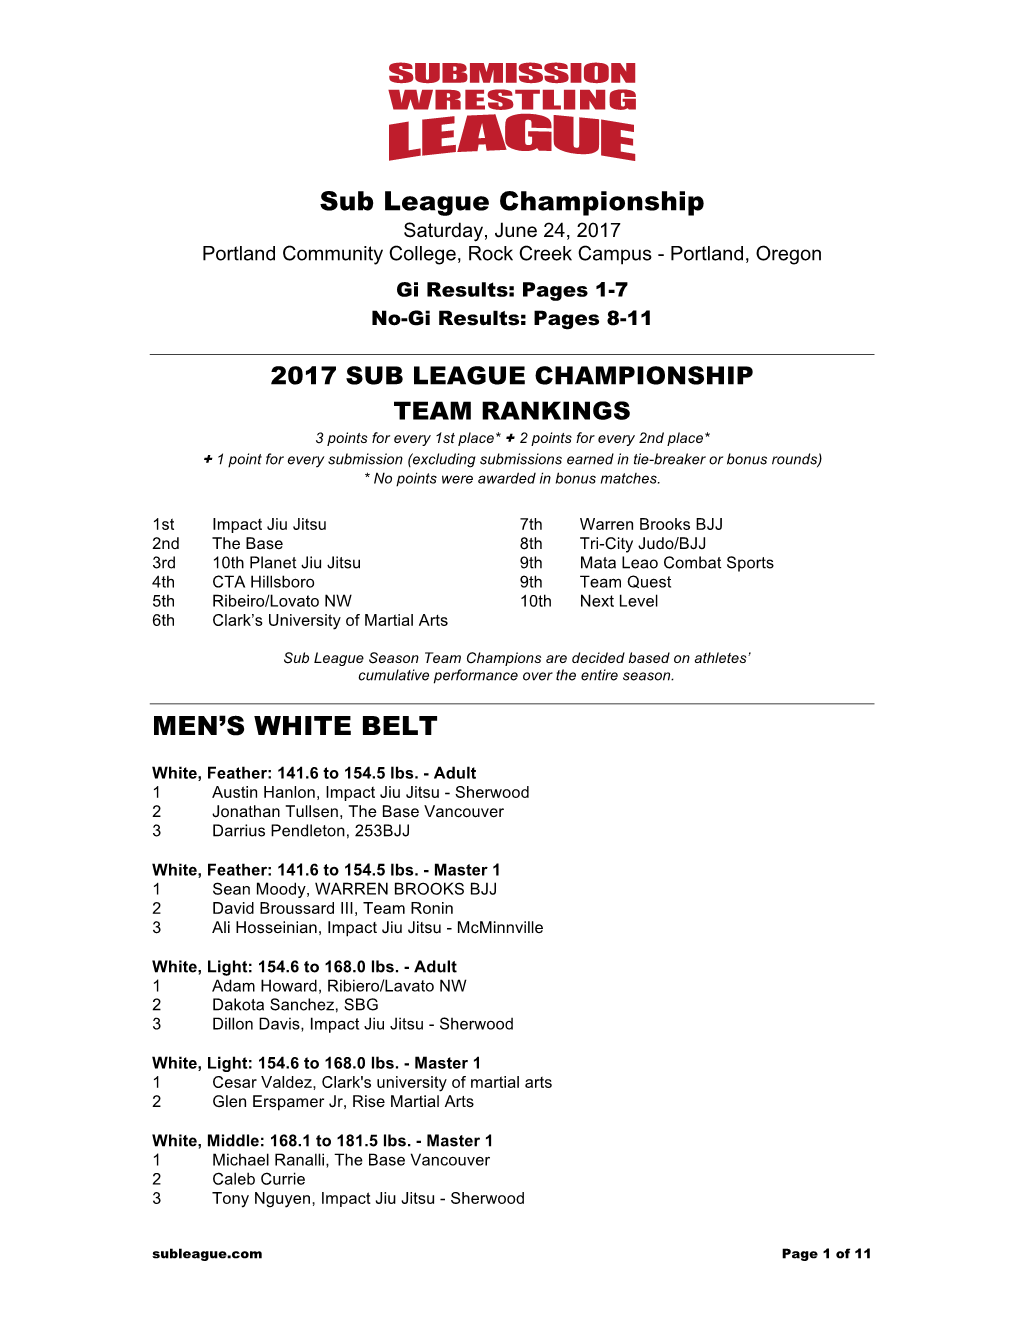 Sub League Championship MEN's WHITE BELT